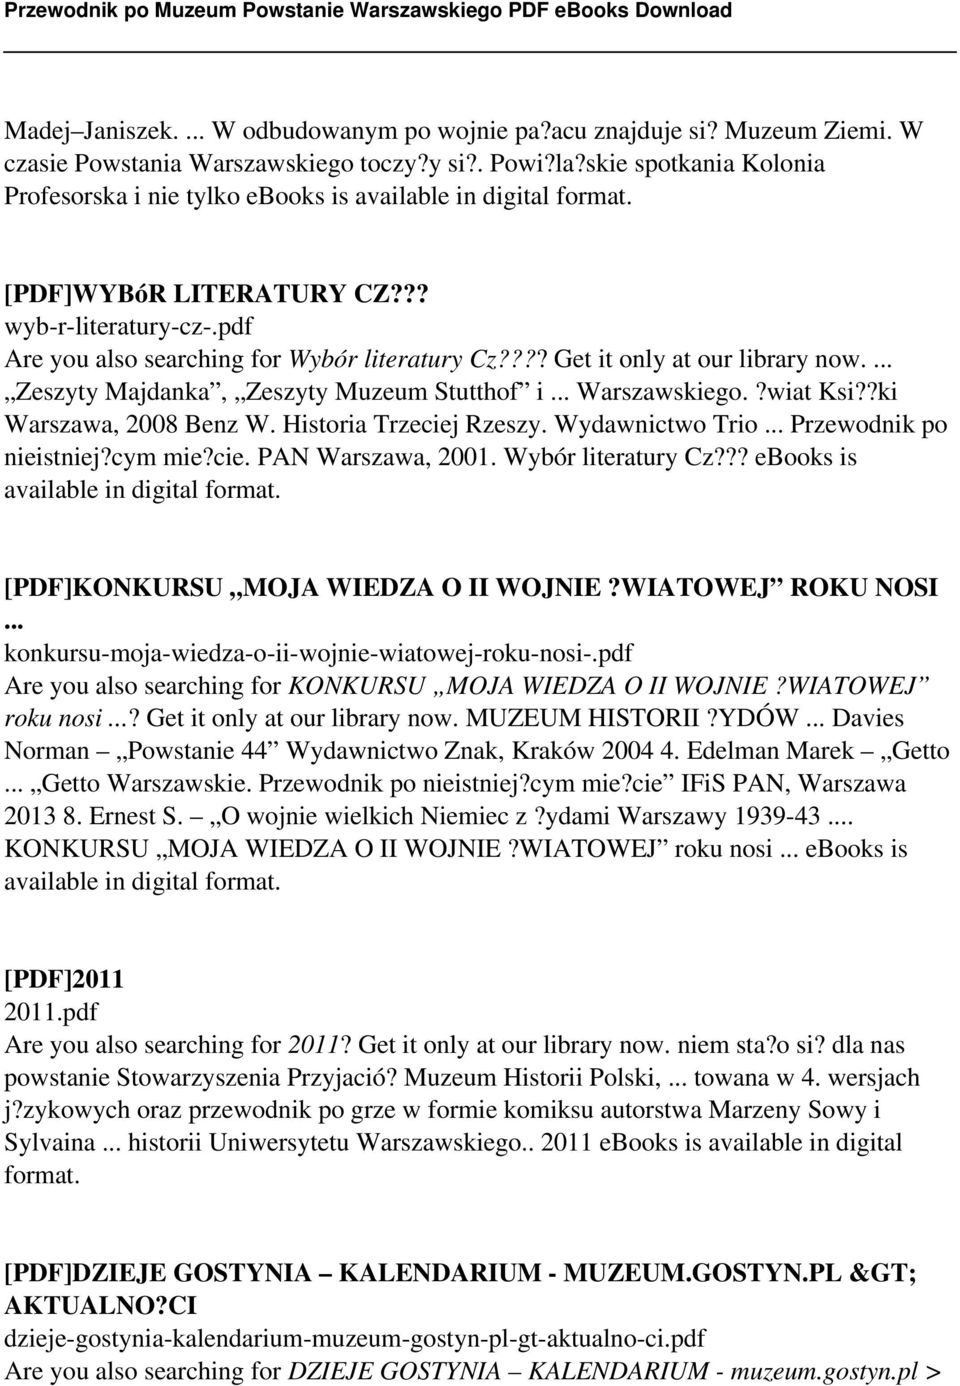 ??? Get it only at our library now.... Zeszyty Majdanka, Zeszyty Muzeum Stutthof i... Warszawskiego.?wiat Ksi??ki Warszawa, 2008 Benz W. Historia Trzeciej Rzeszy. Wydawnictwo Trio.